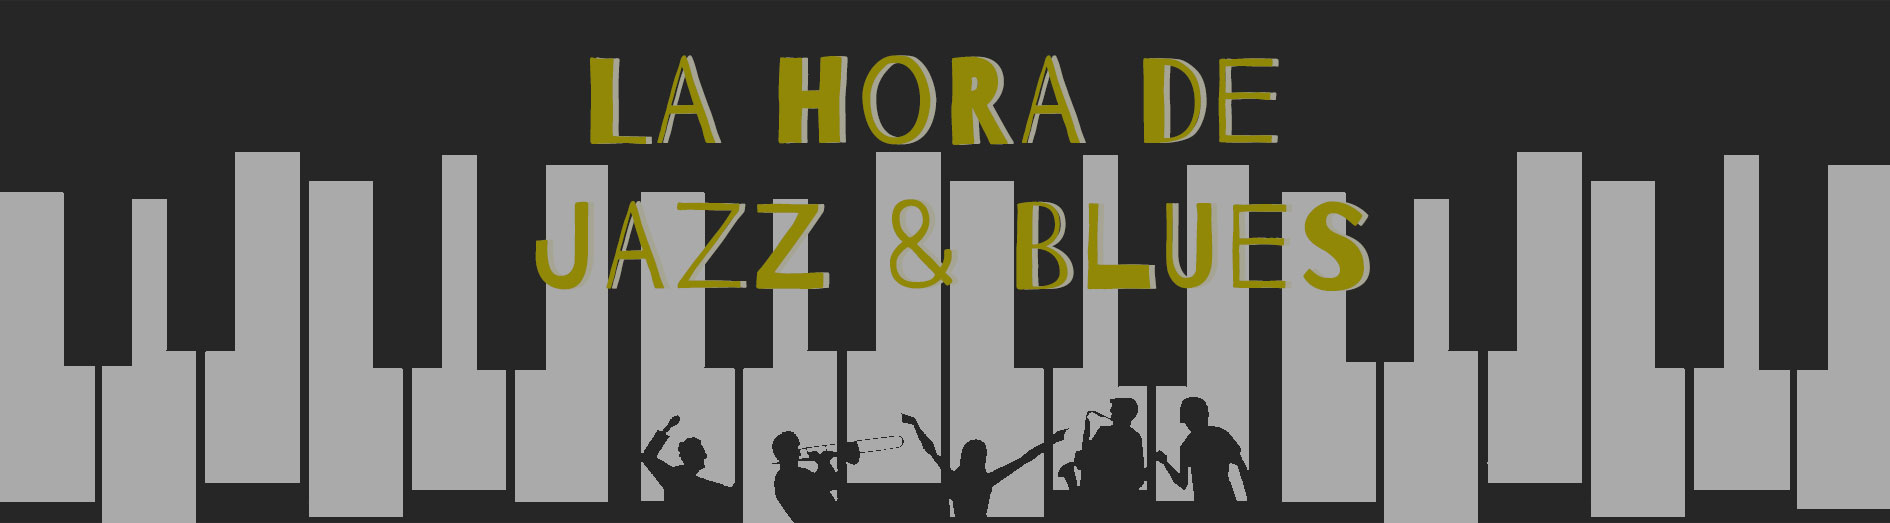 Las 5 noticias de jazz de la semana